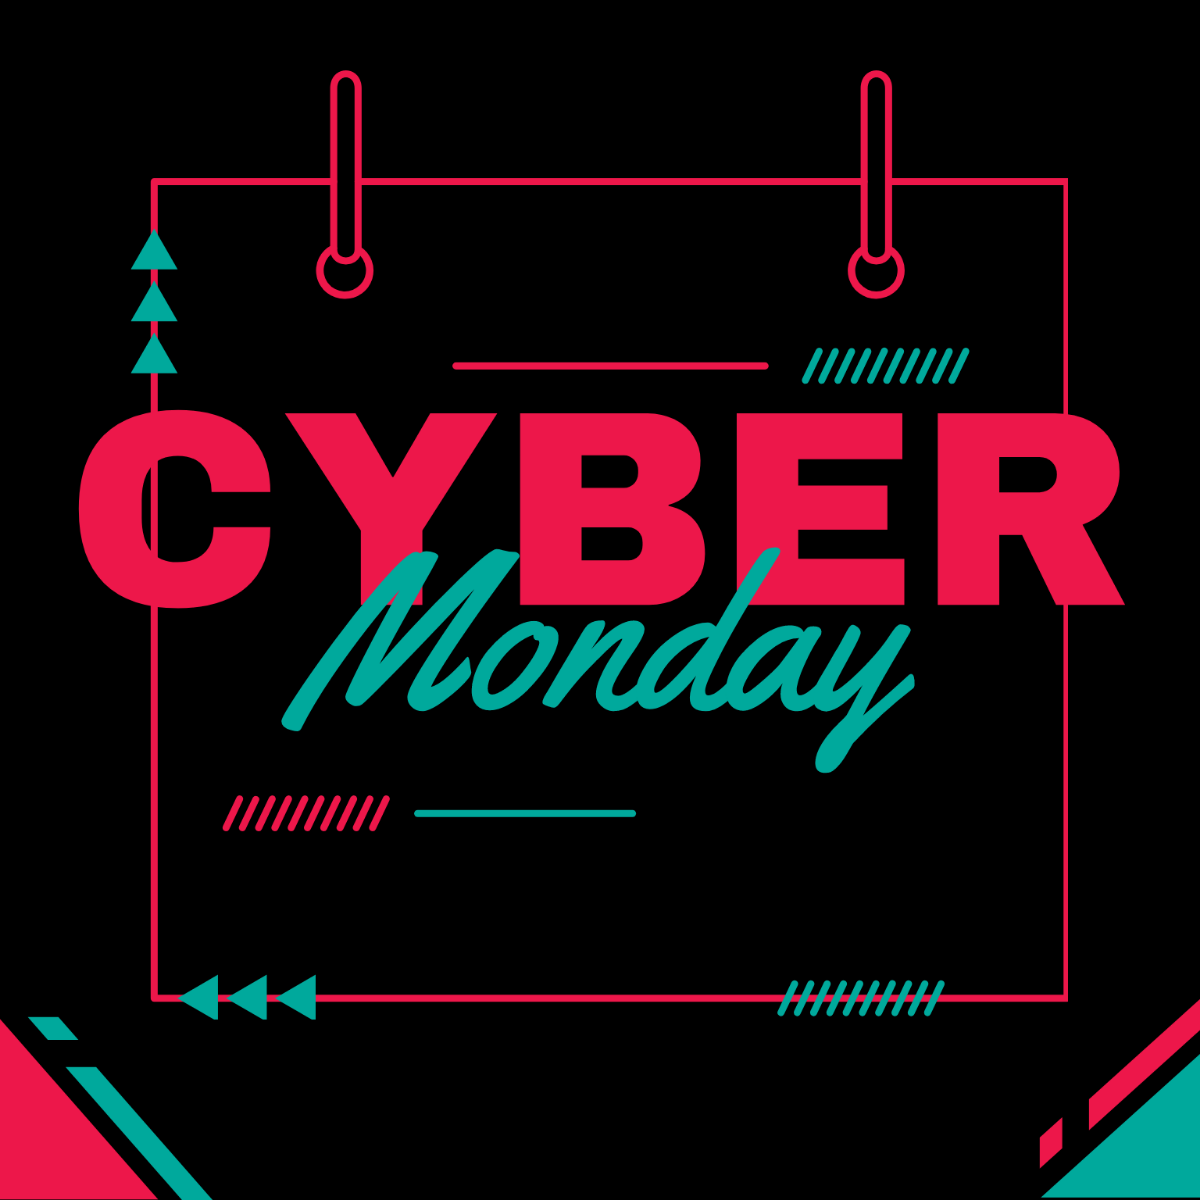 Cyber Monday Calendar Vector Template